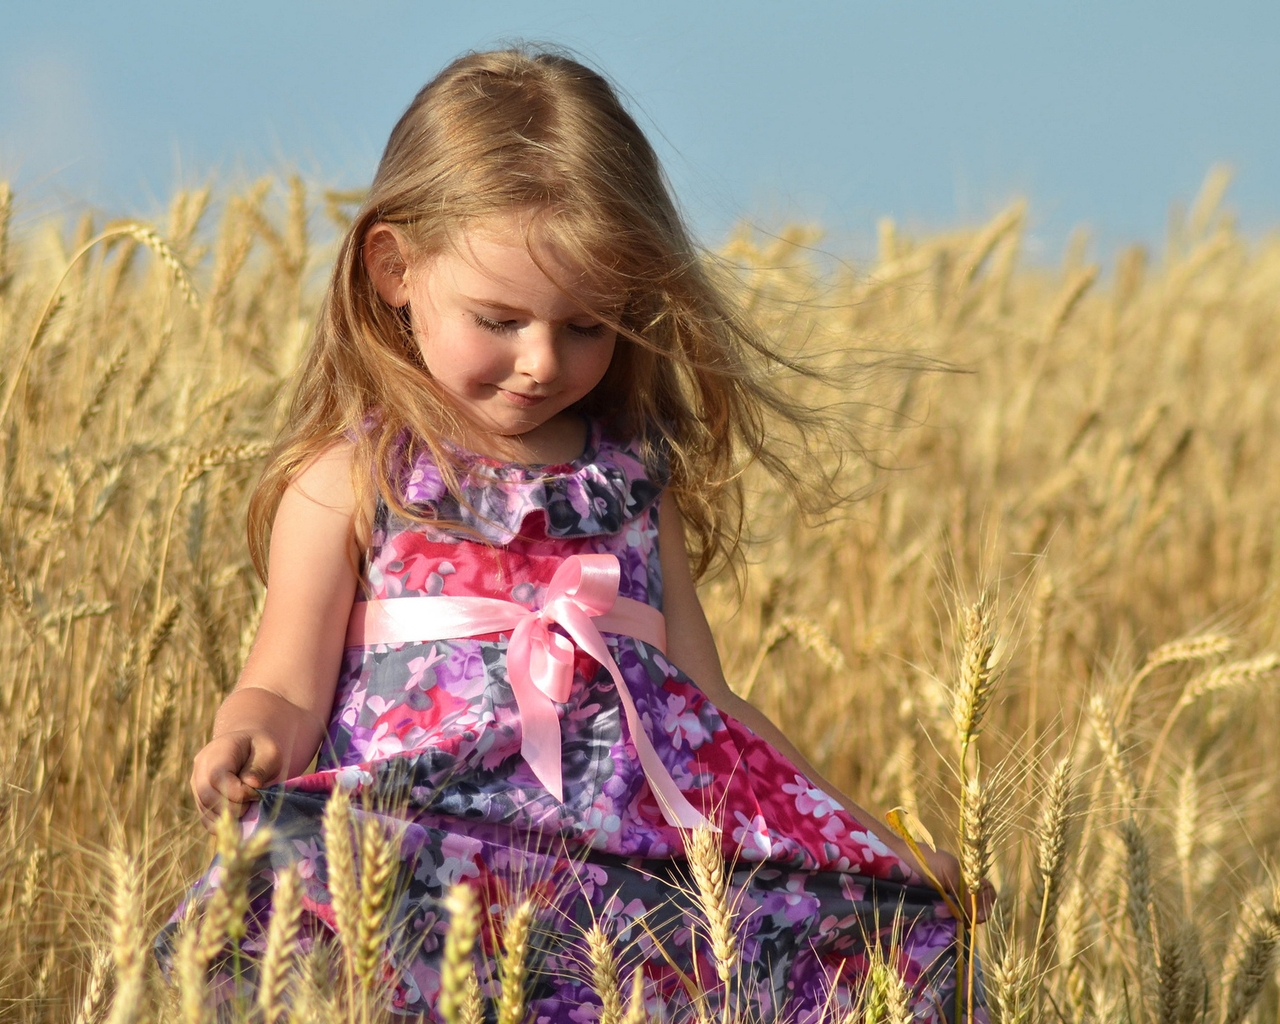 Image: Girl, dress, bow, wheat, ears, field